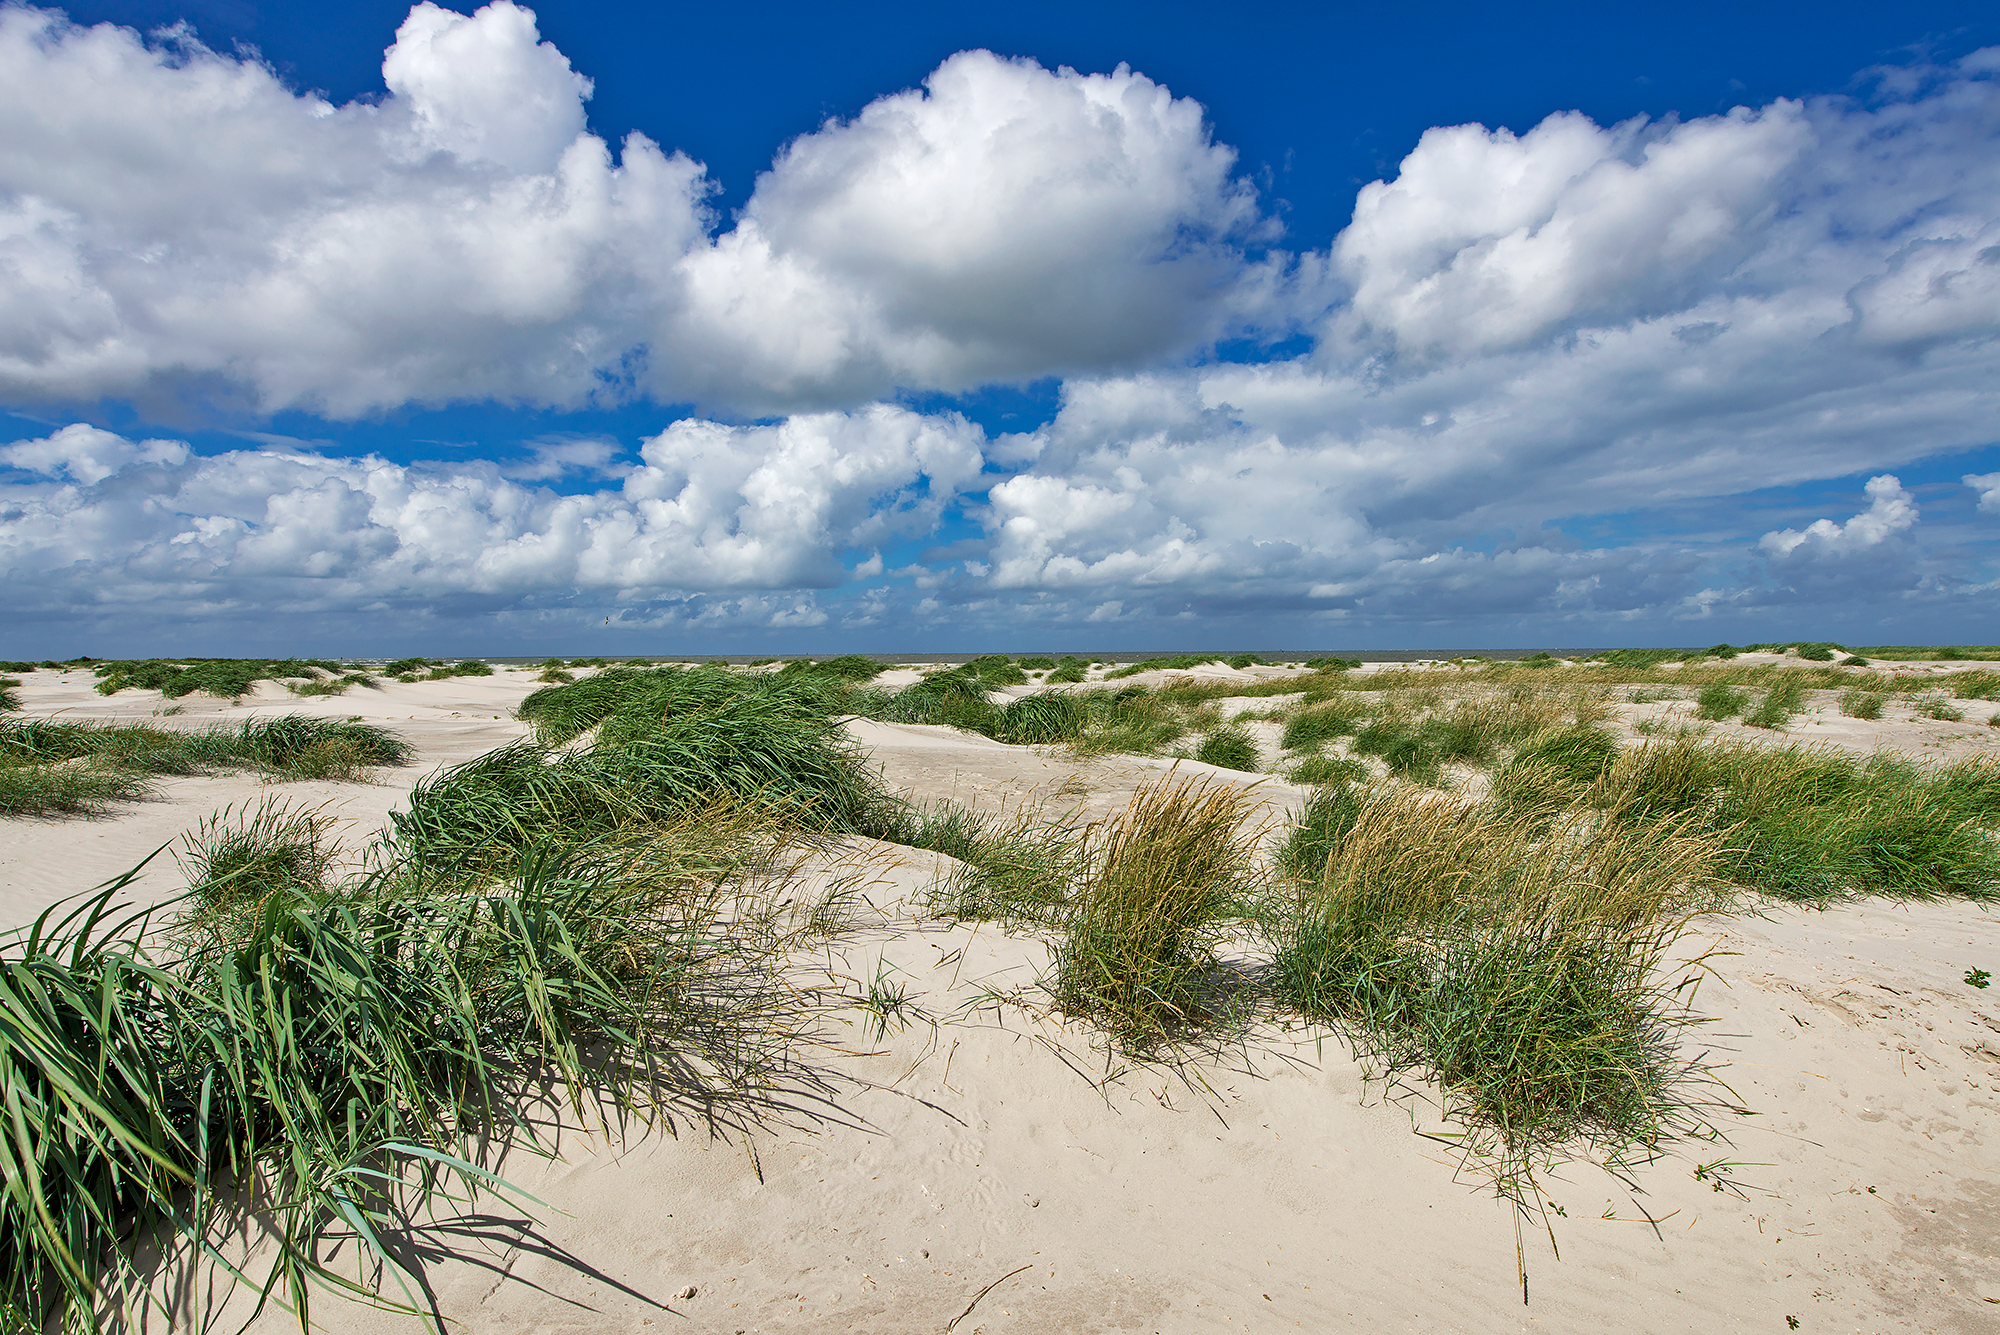 Duinen begroeid met zandhaver in de zeereep van het onbewoonde Waddeneiland Rottumeroog in de Nederlandse Waddenzee.